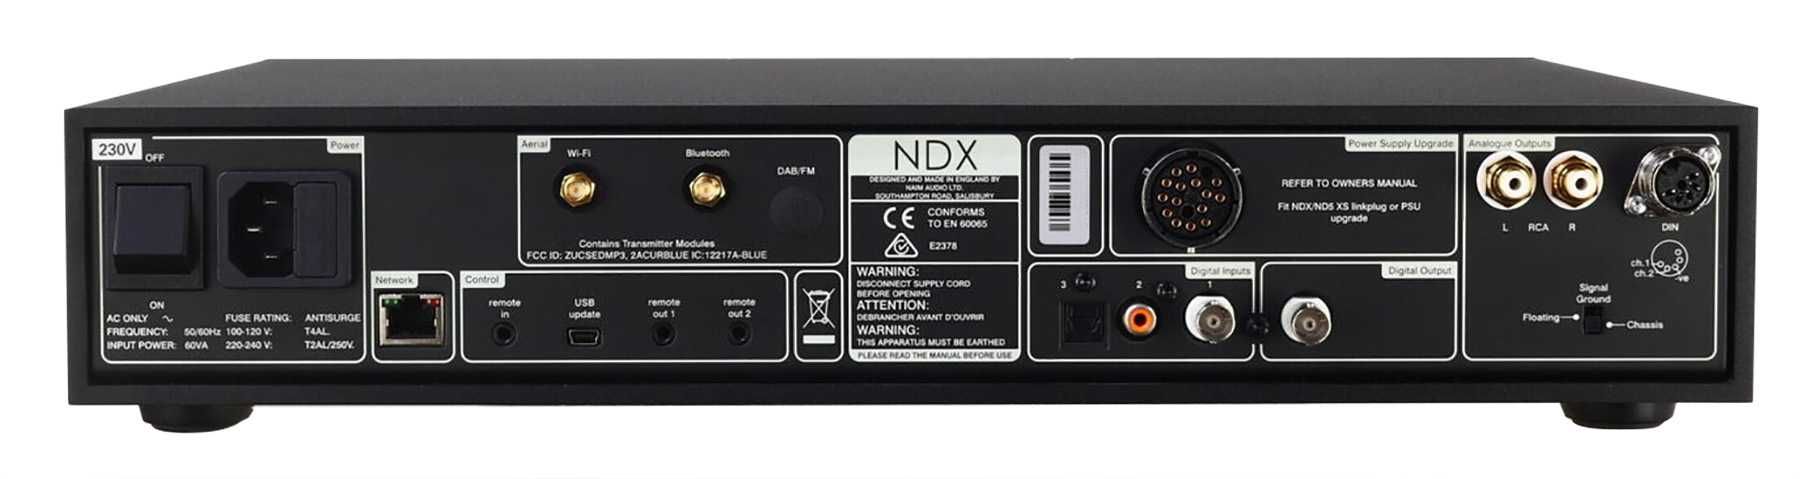 Naim NDX odtwarzacz sieciowy klasy High-End